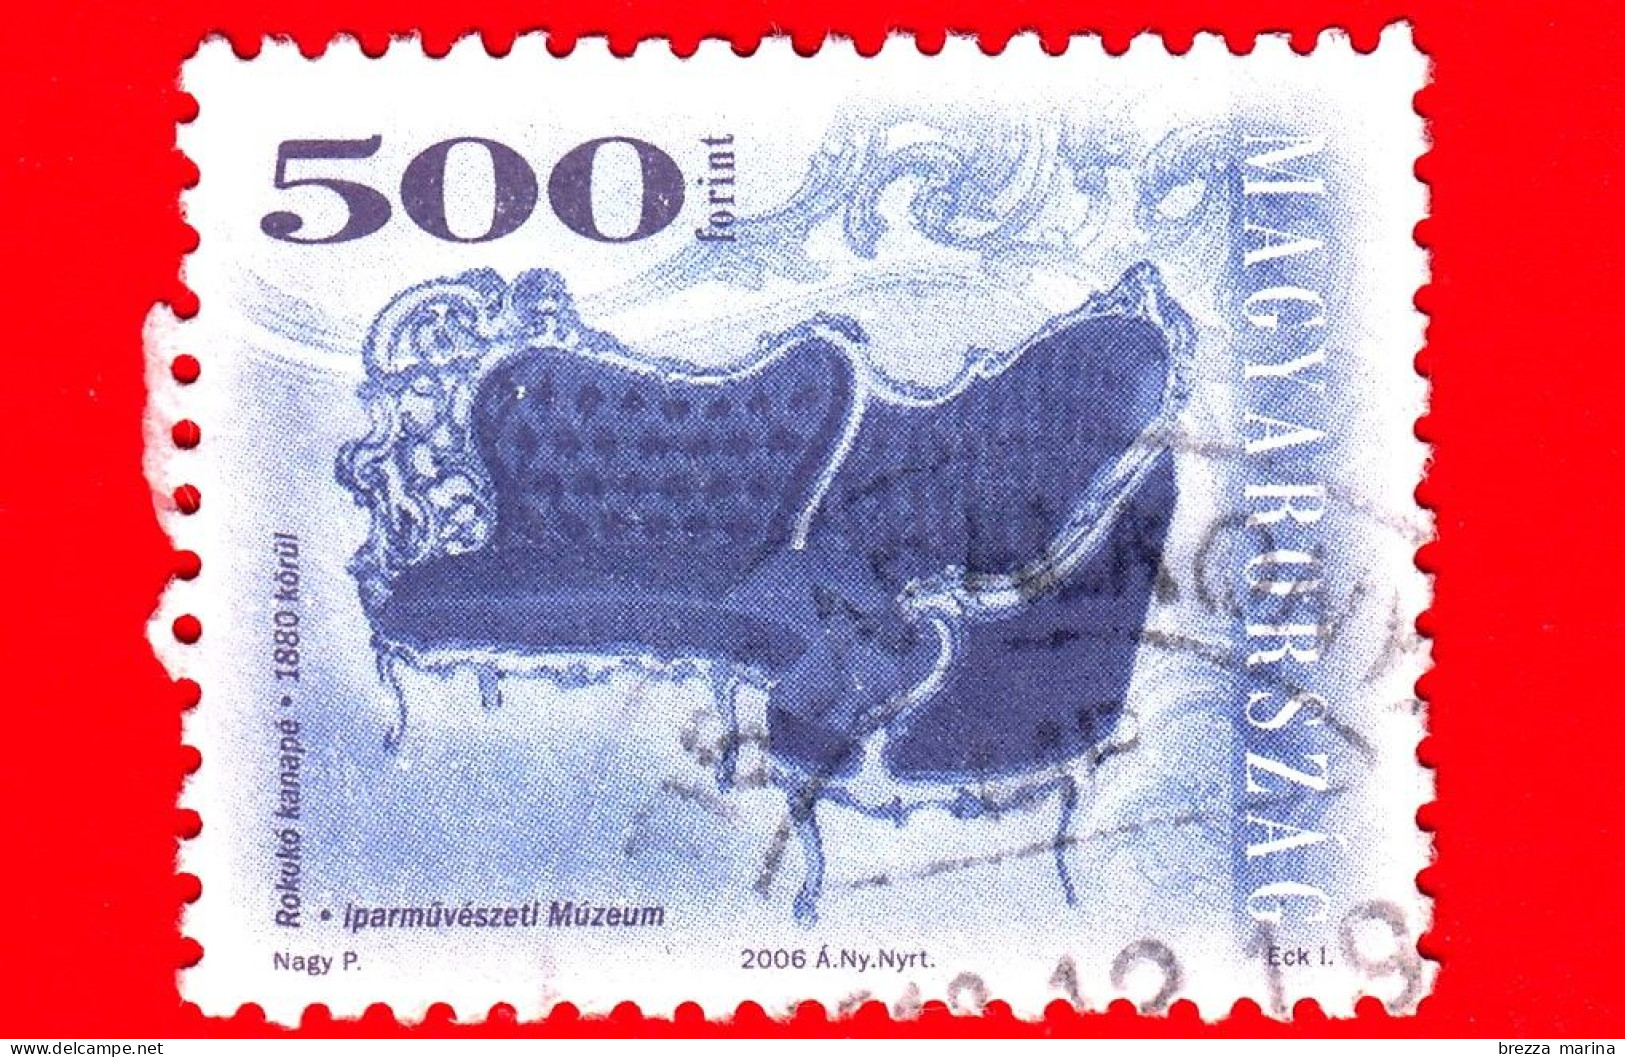 UNGHERIA - MAGYAR - Usato - 2006 - Mobili Antichi - Arredamento - Sedia - Chair - Rococo Style Sofa, 1880 - 500 - Used Stamps